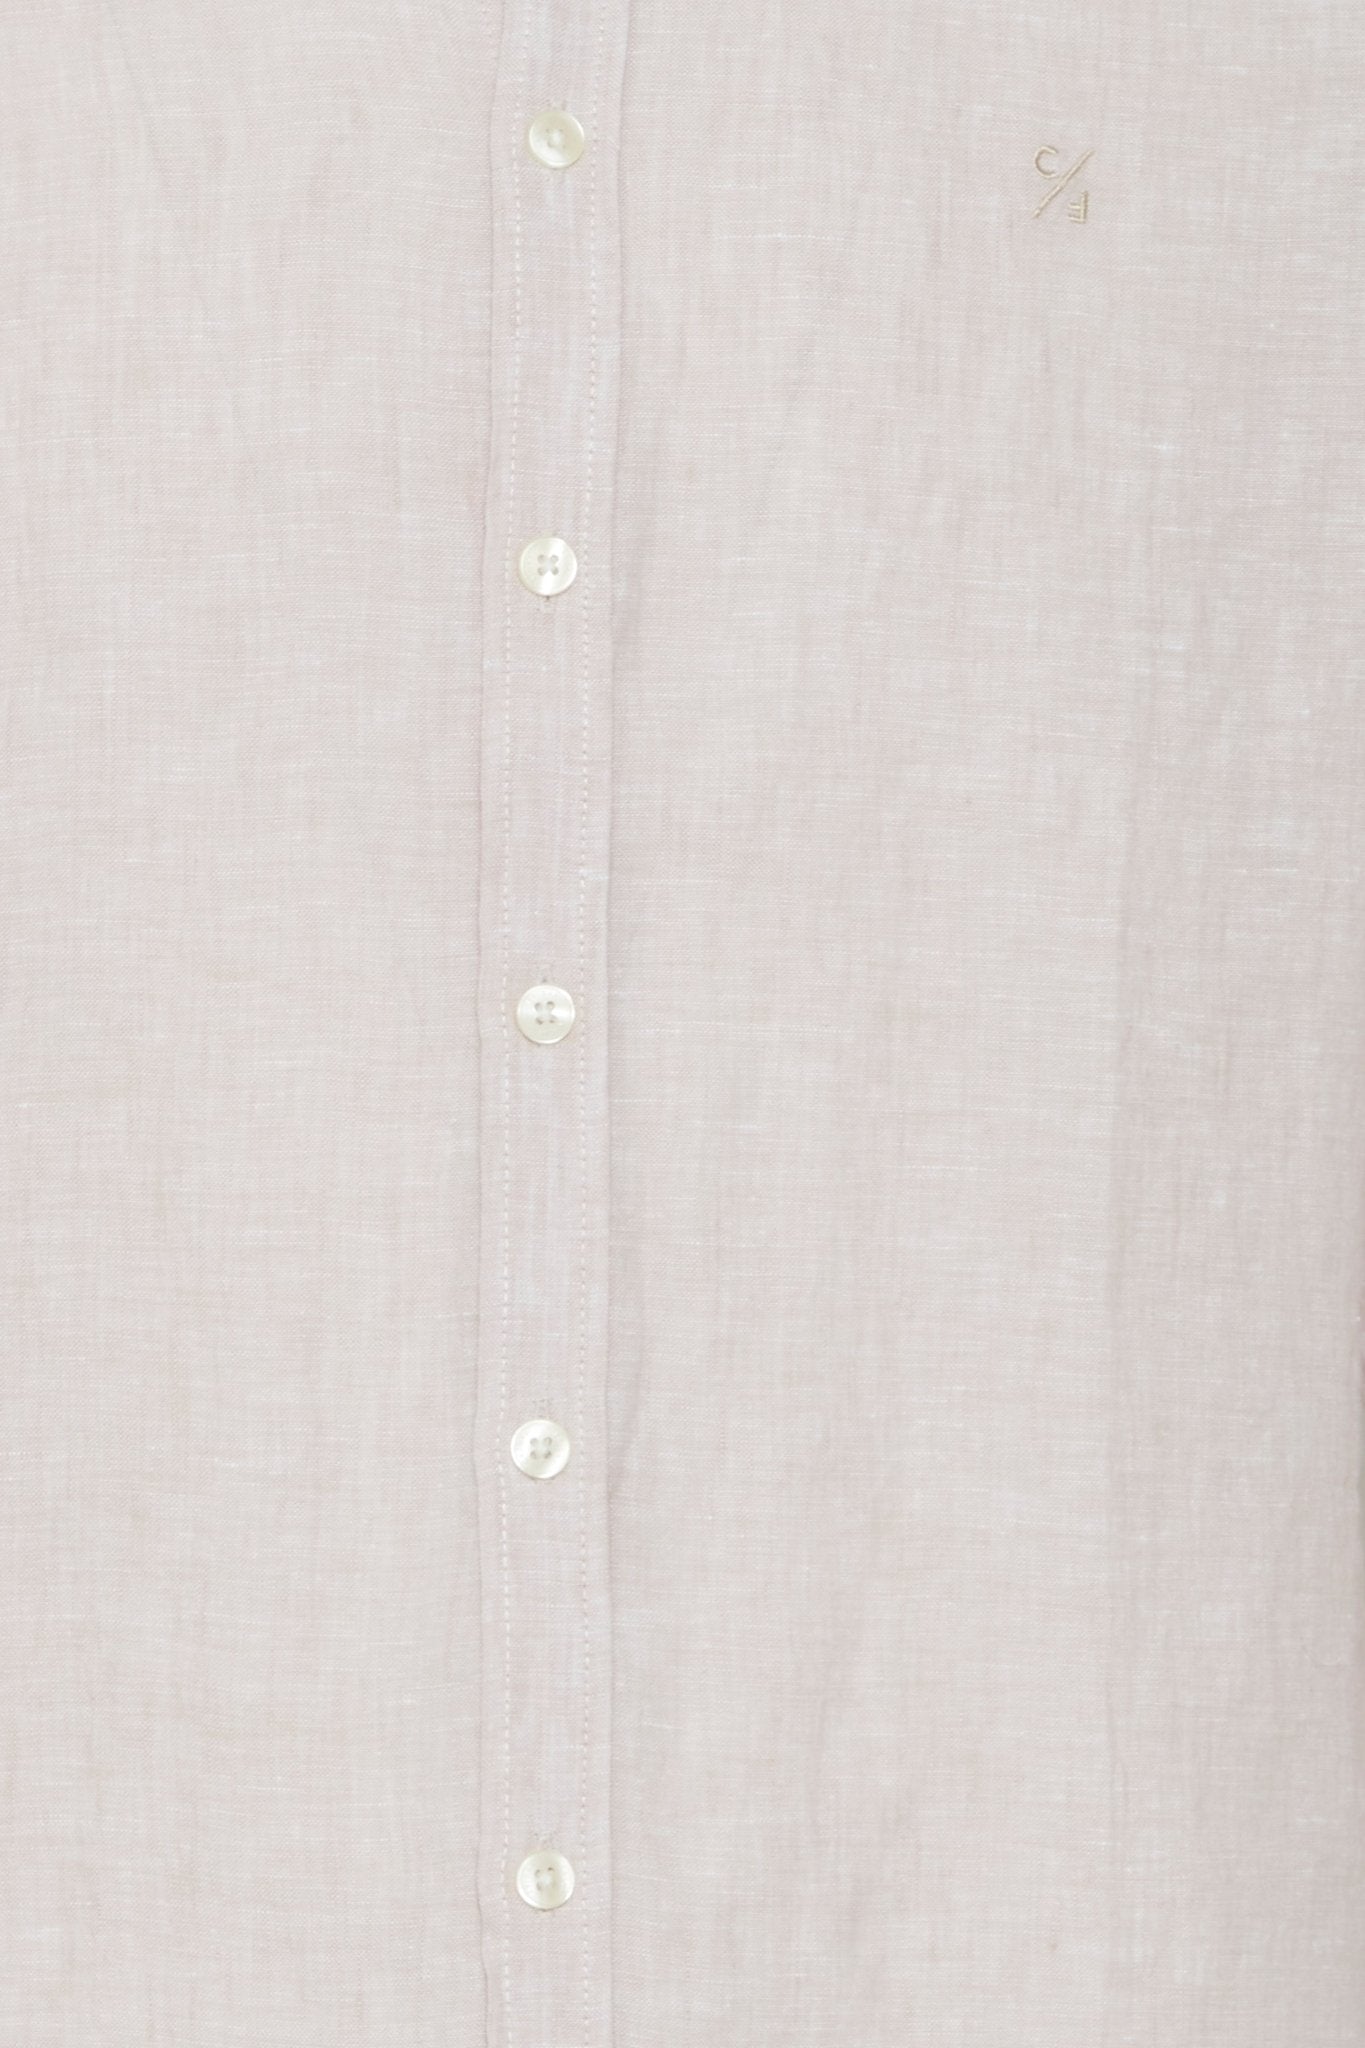 CASUAL FRIDAY - Anton BD LS linen shirt - 20504348 - Boutique Bubbles